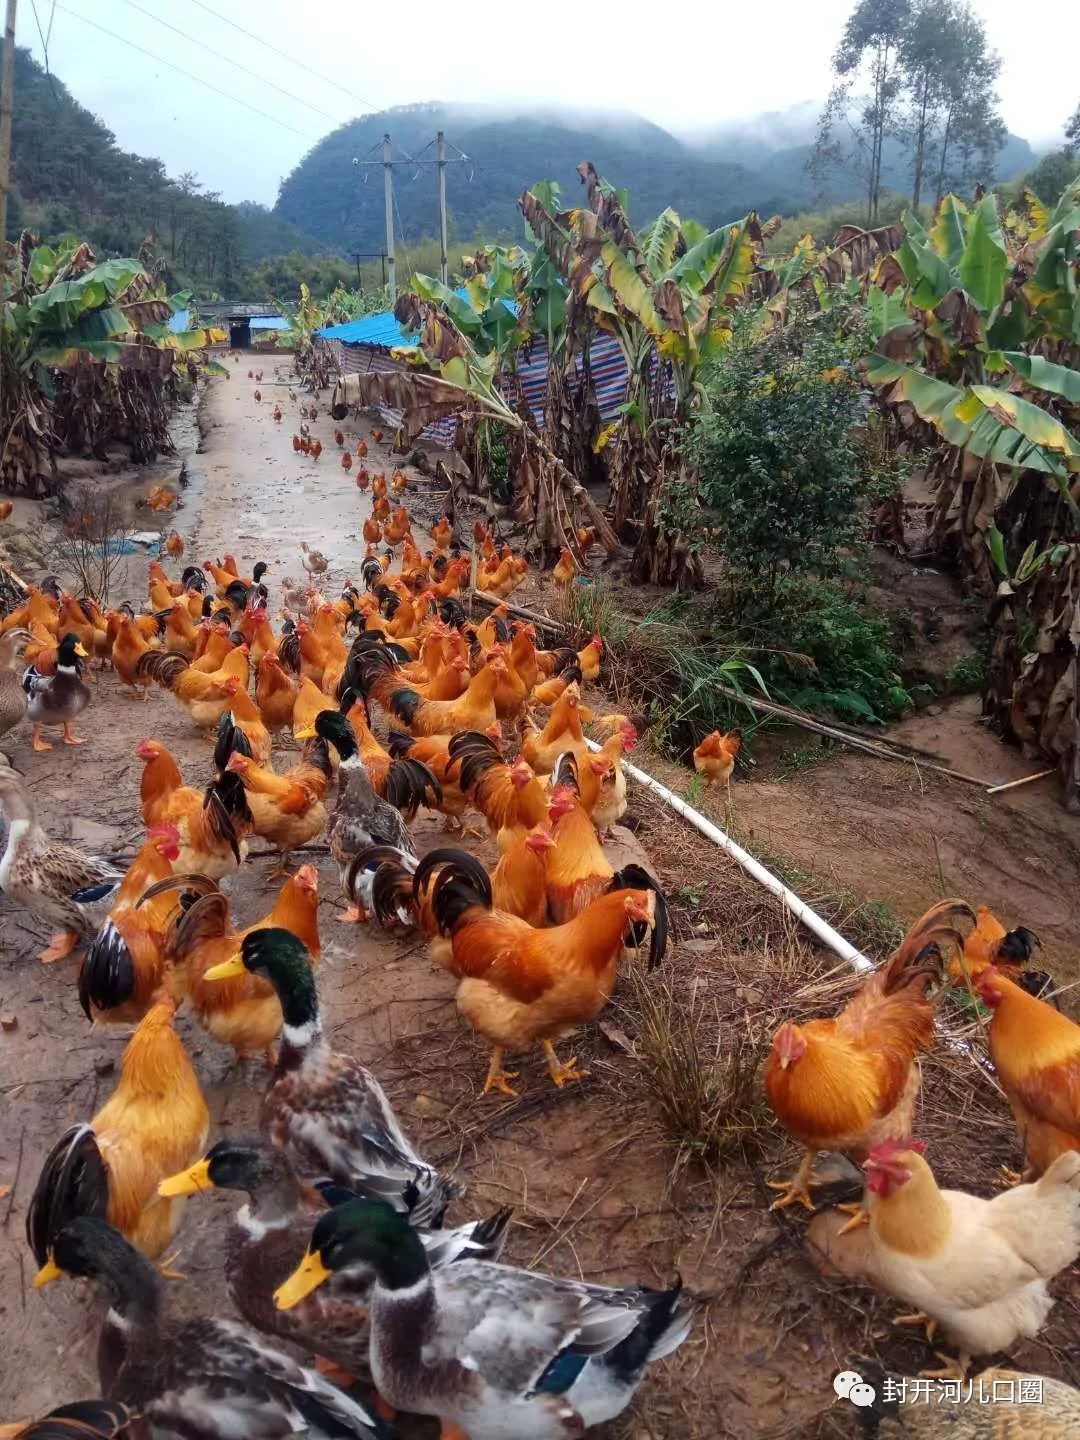 河儿口罗源黄标养鸡场有大量鸡,鸭出售